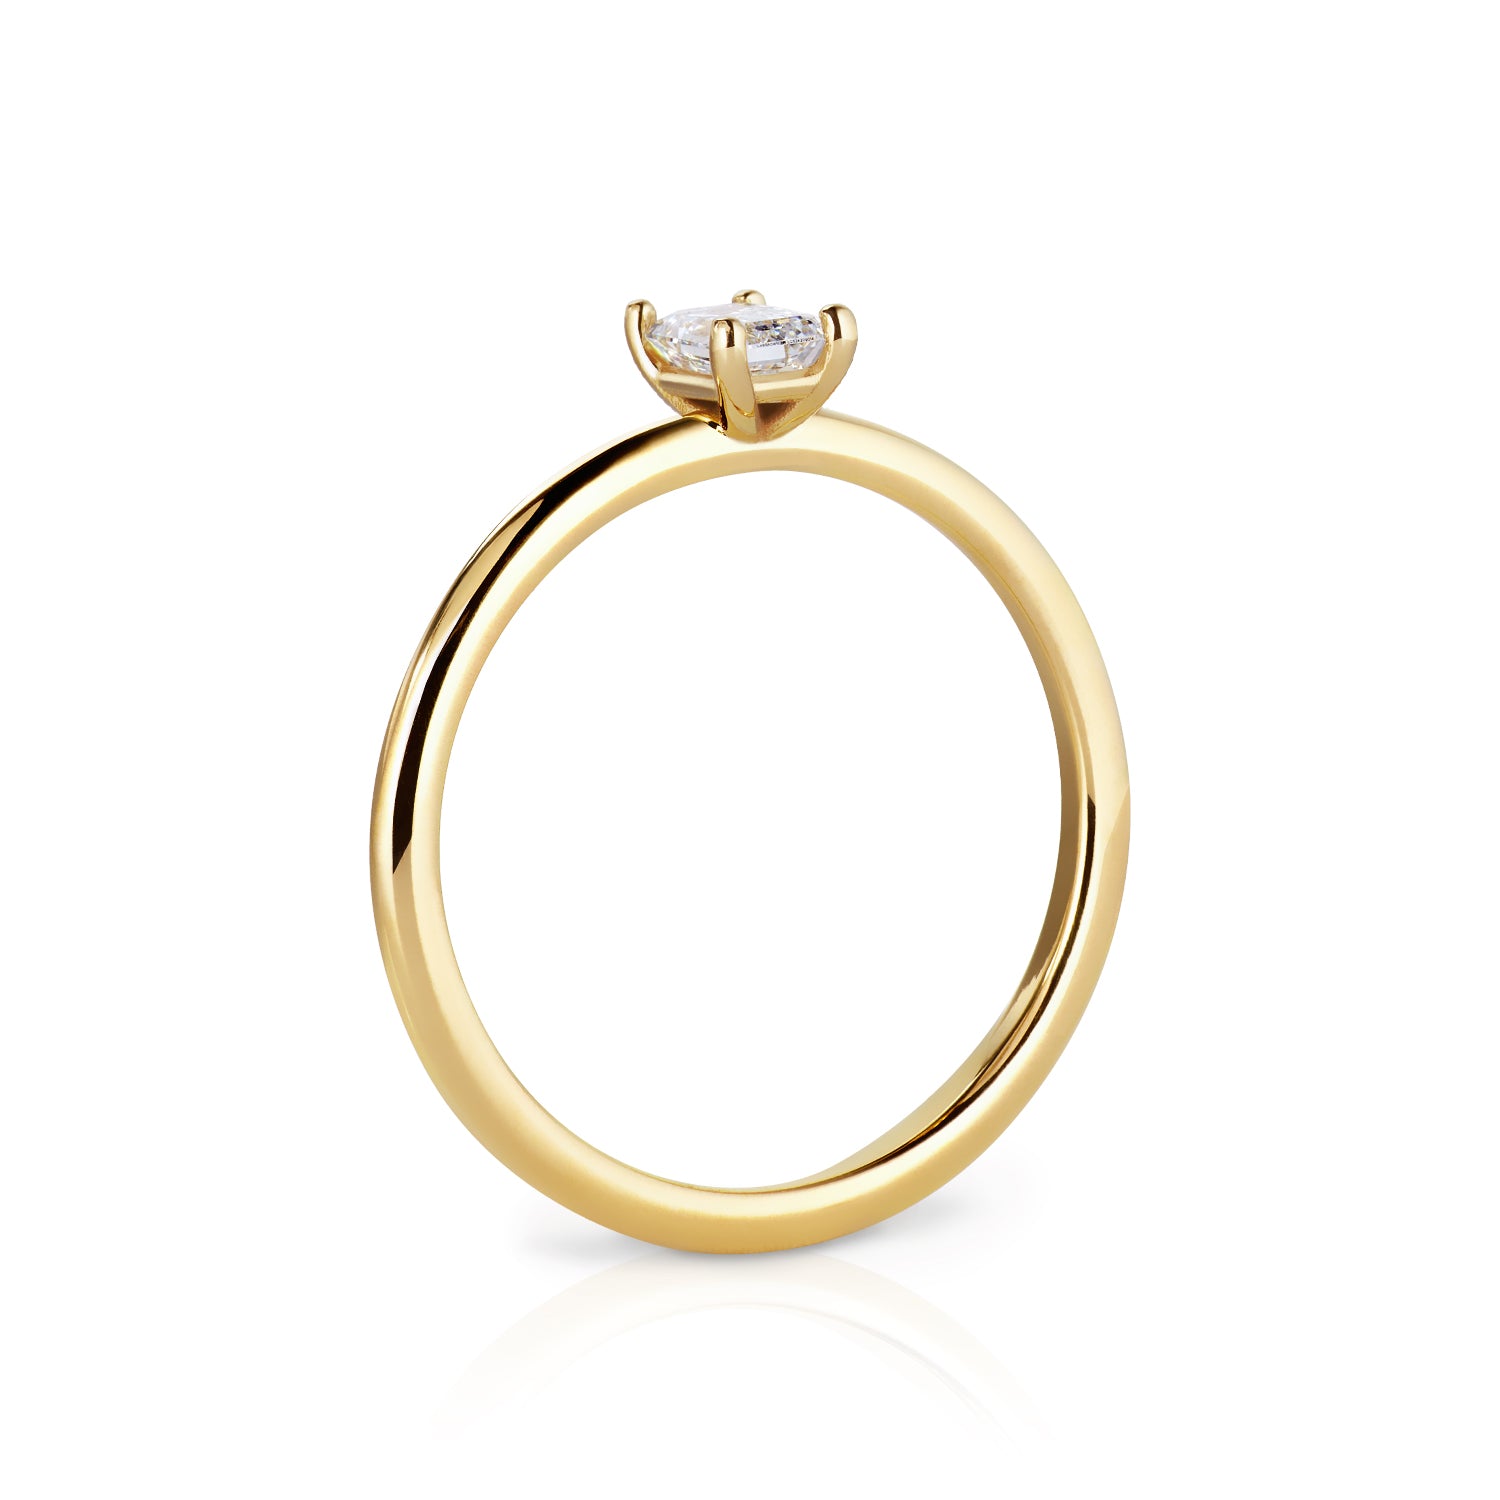 Der Ring aus recykeltem 18 Karat Gelbgold heißt Khloé und besticht durch seine besondere Form und dem wunderschönen Schliff des Labor Diamanten.